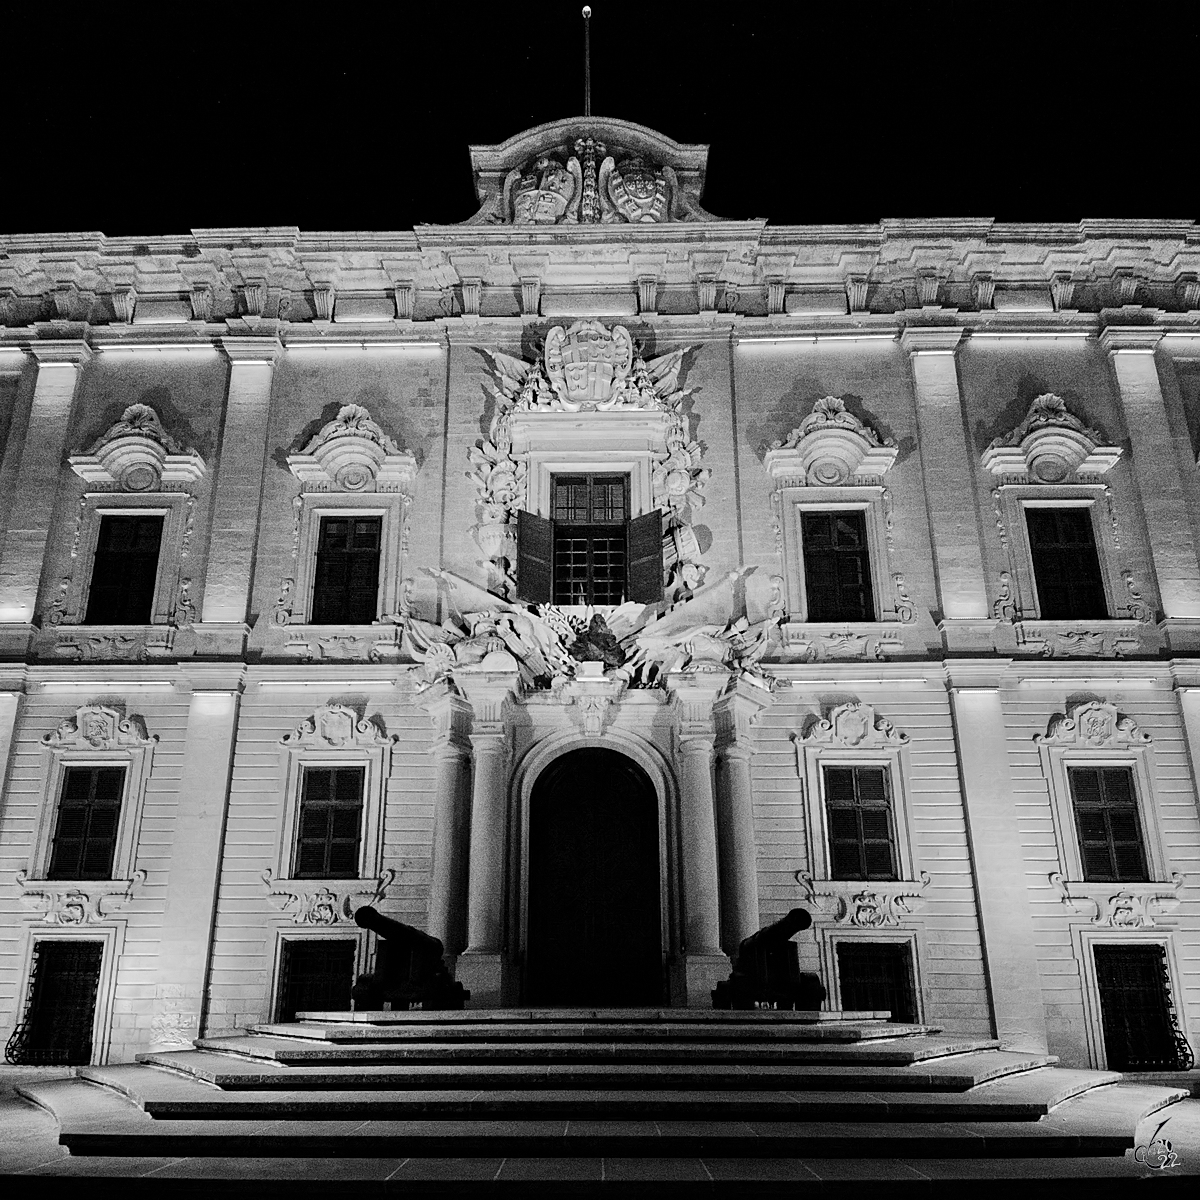 Der Eingang zum im barocken Stil erbauten Amtssitz des Premierministers von Malta. (Oktober 2017)